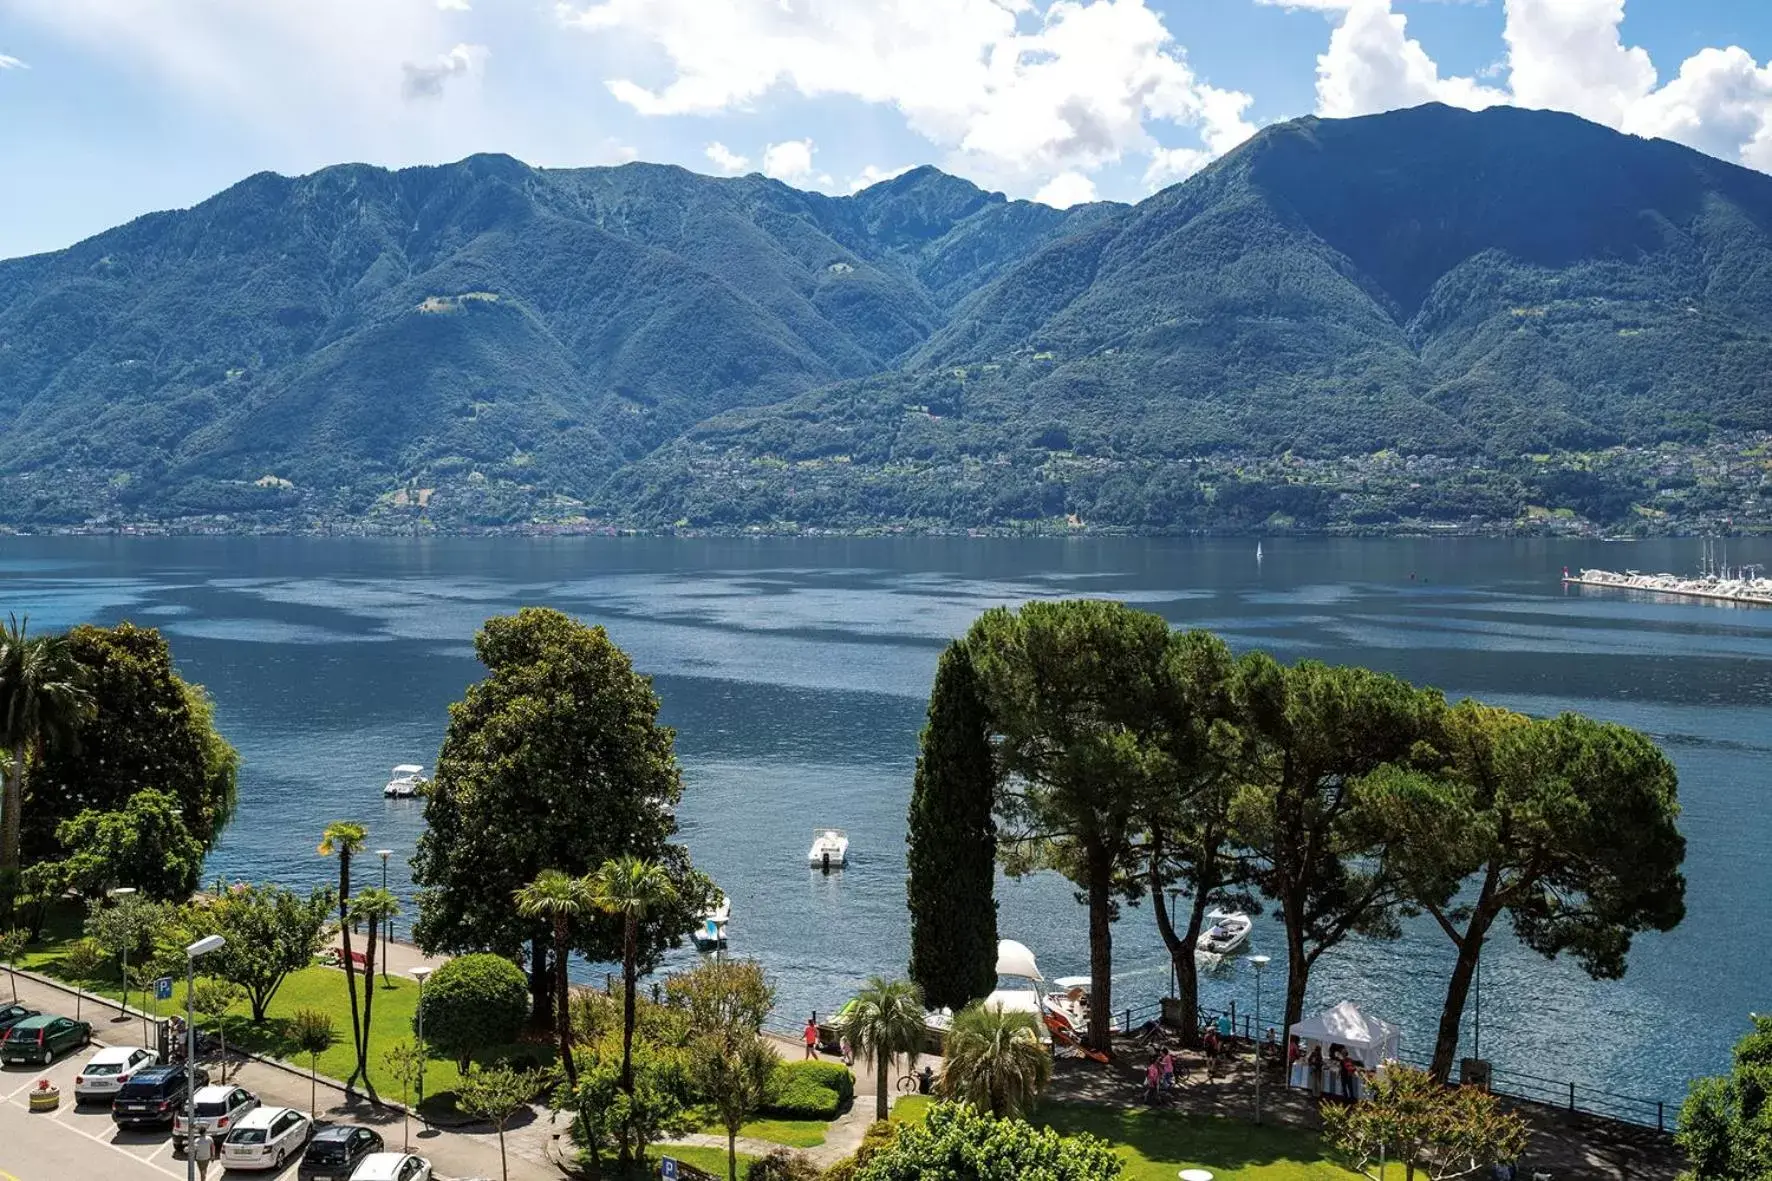 Lake view in Hotel Lago Maggiore - Welcome!